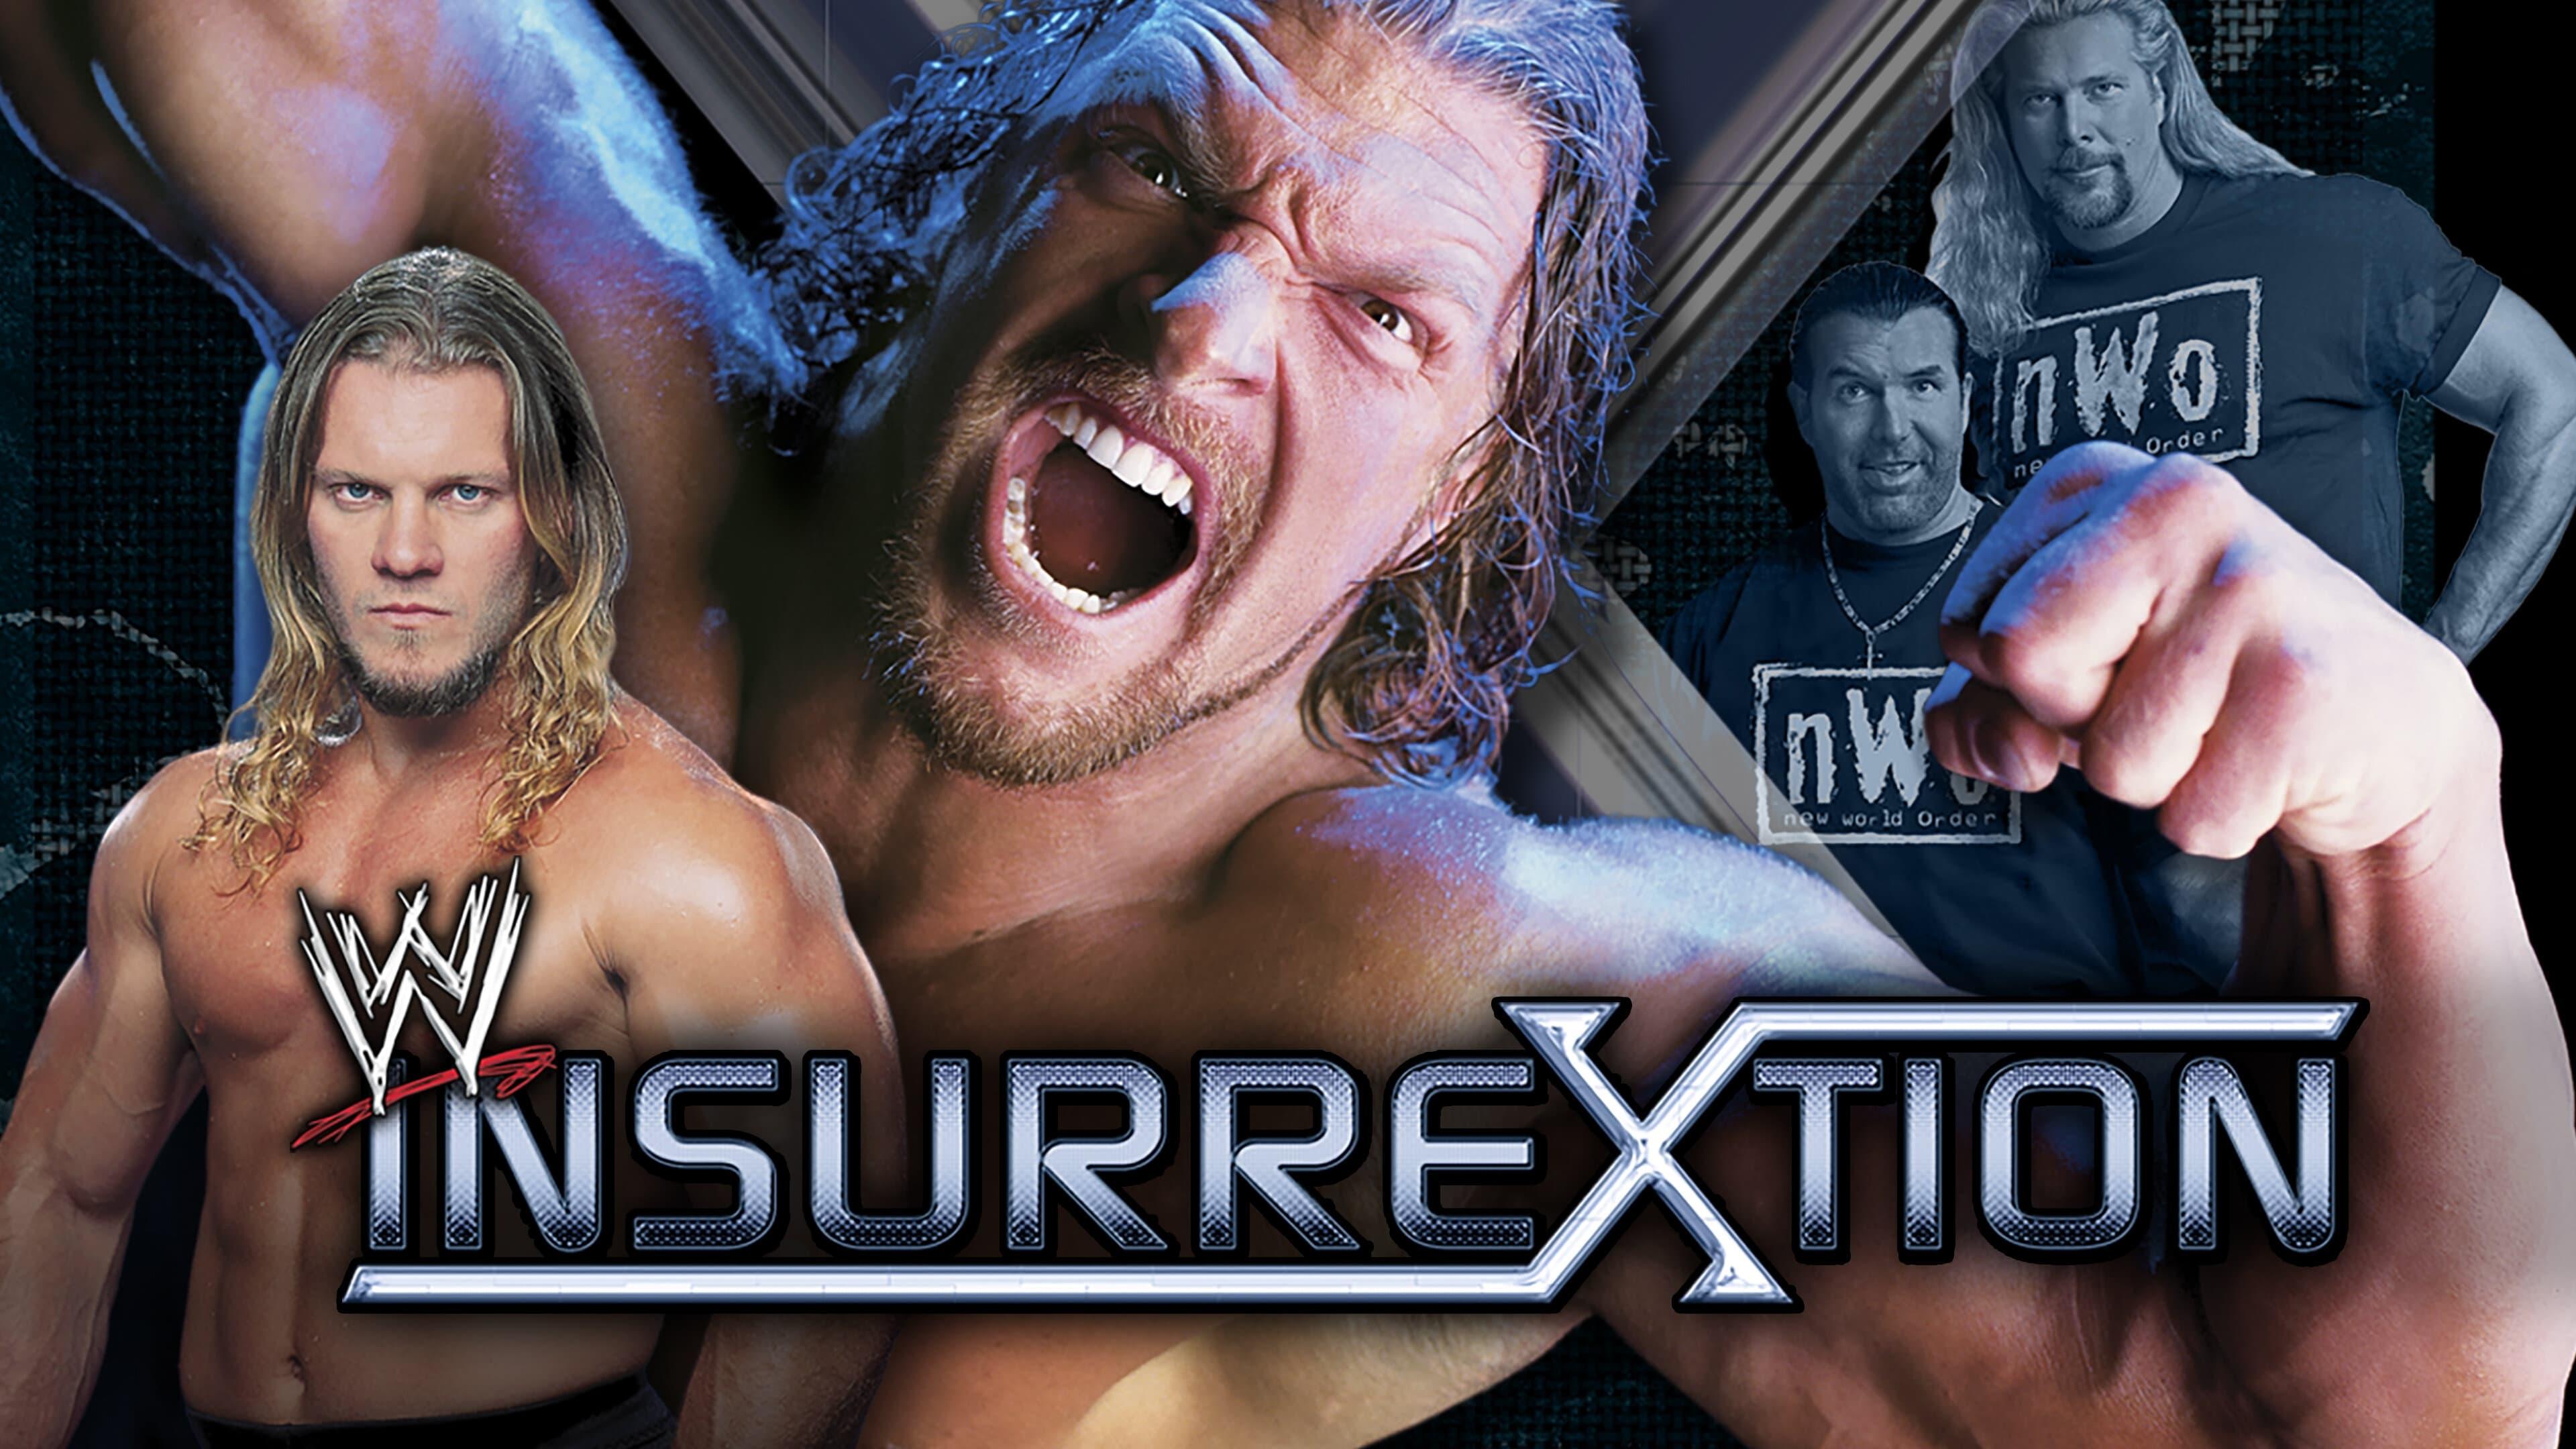 WWE Insurrextion 2002 backdrop